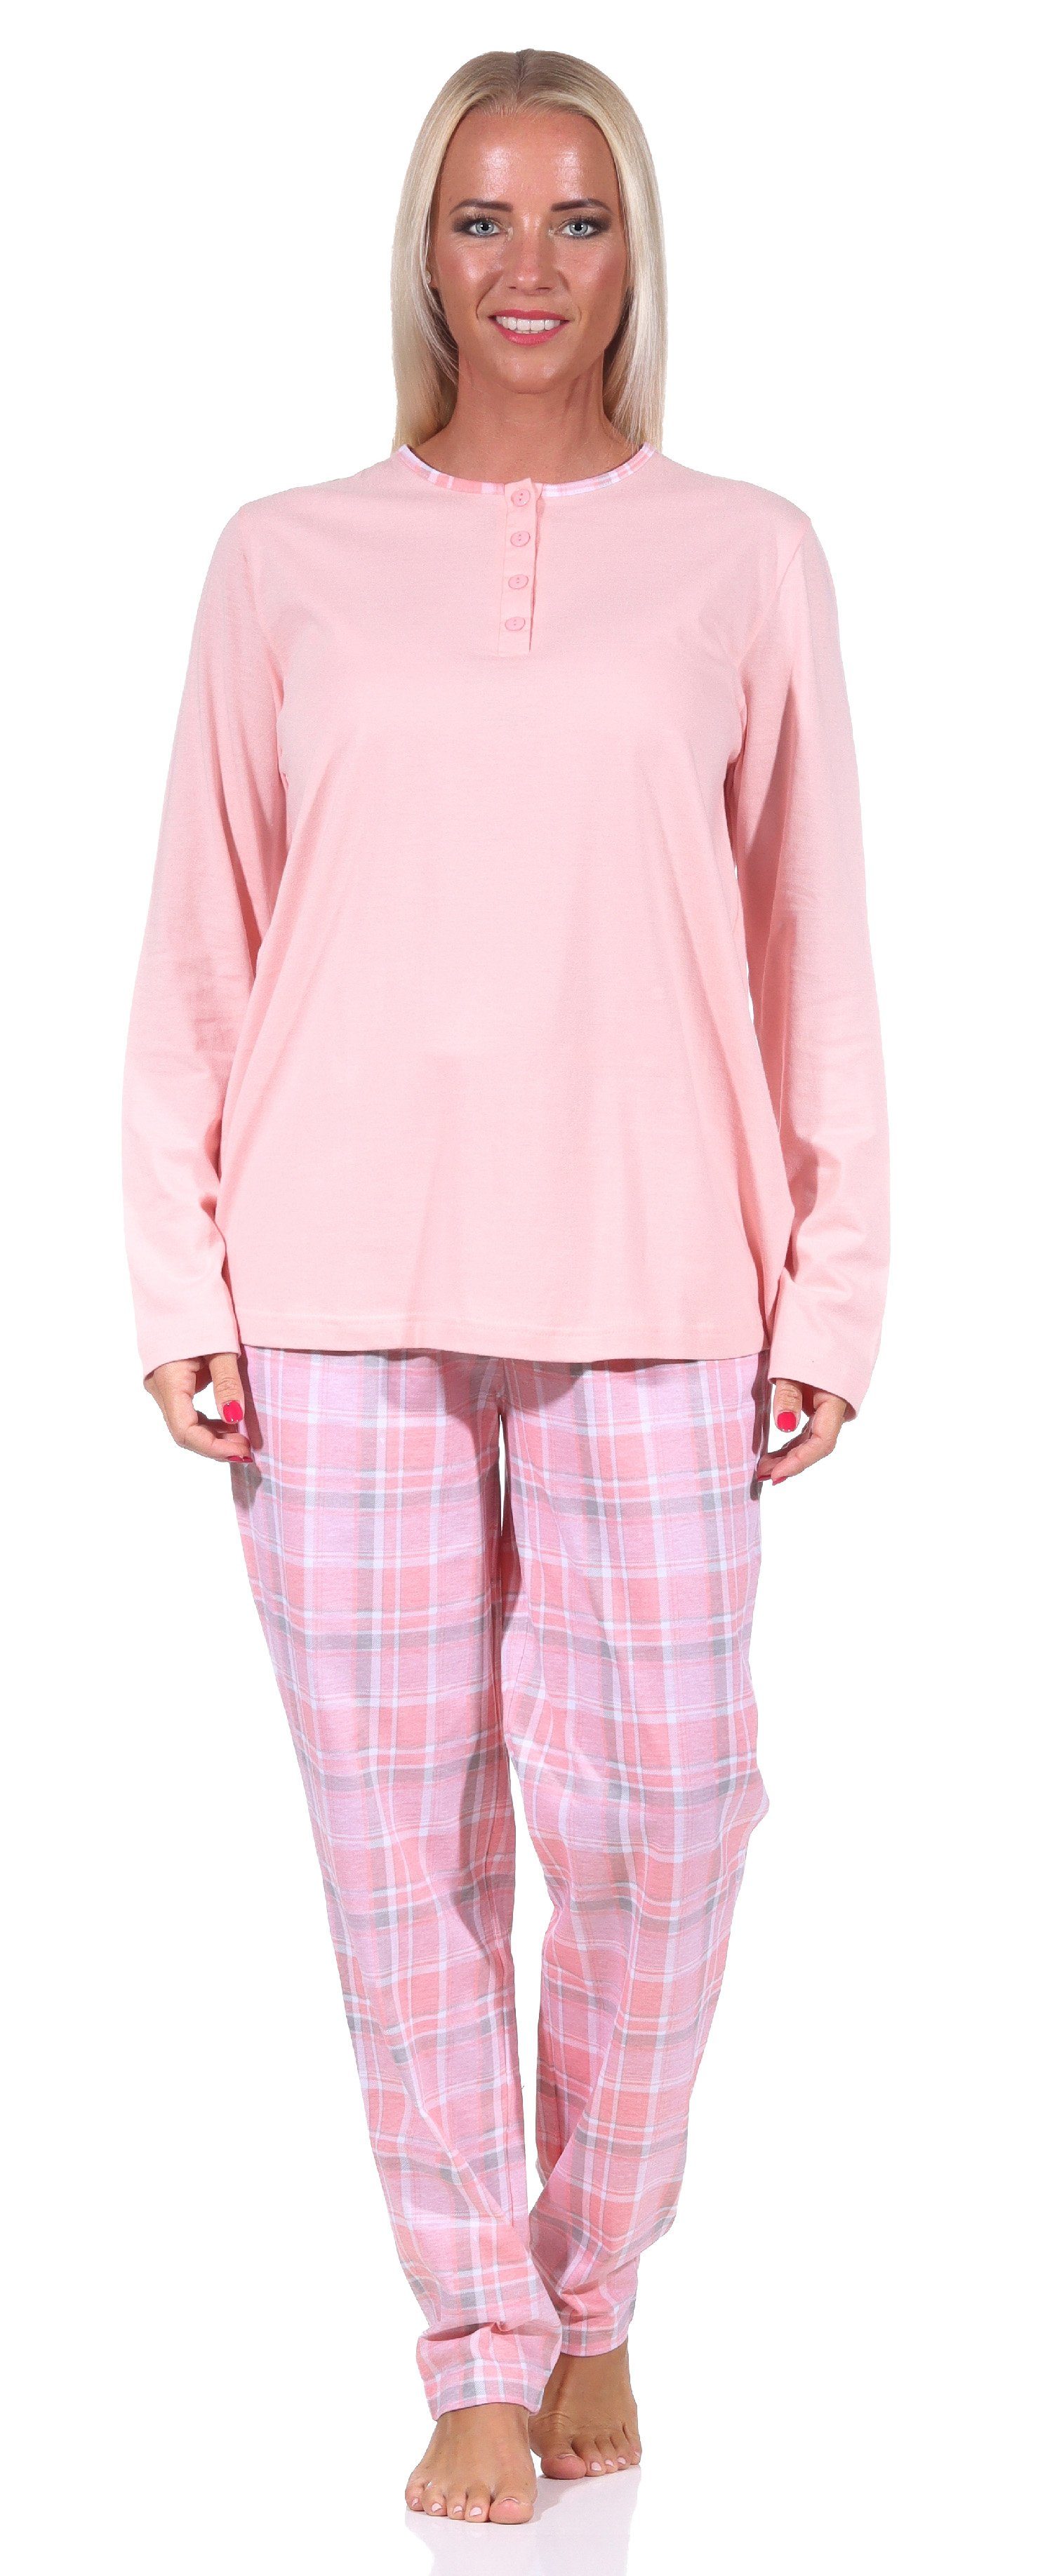 Normann langarm Pyjama Karohose rosa mit Pyjama Hals Damen Schlafanzug und am Knopfleiste